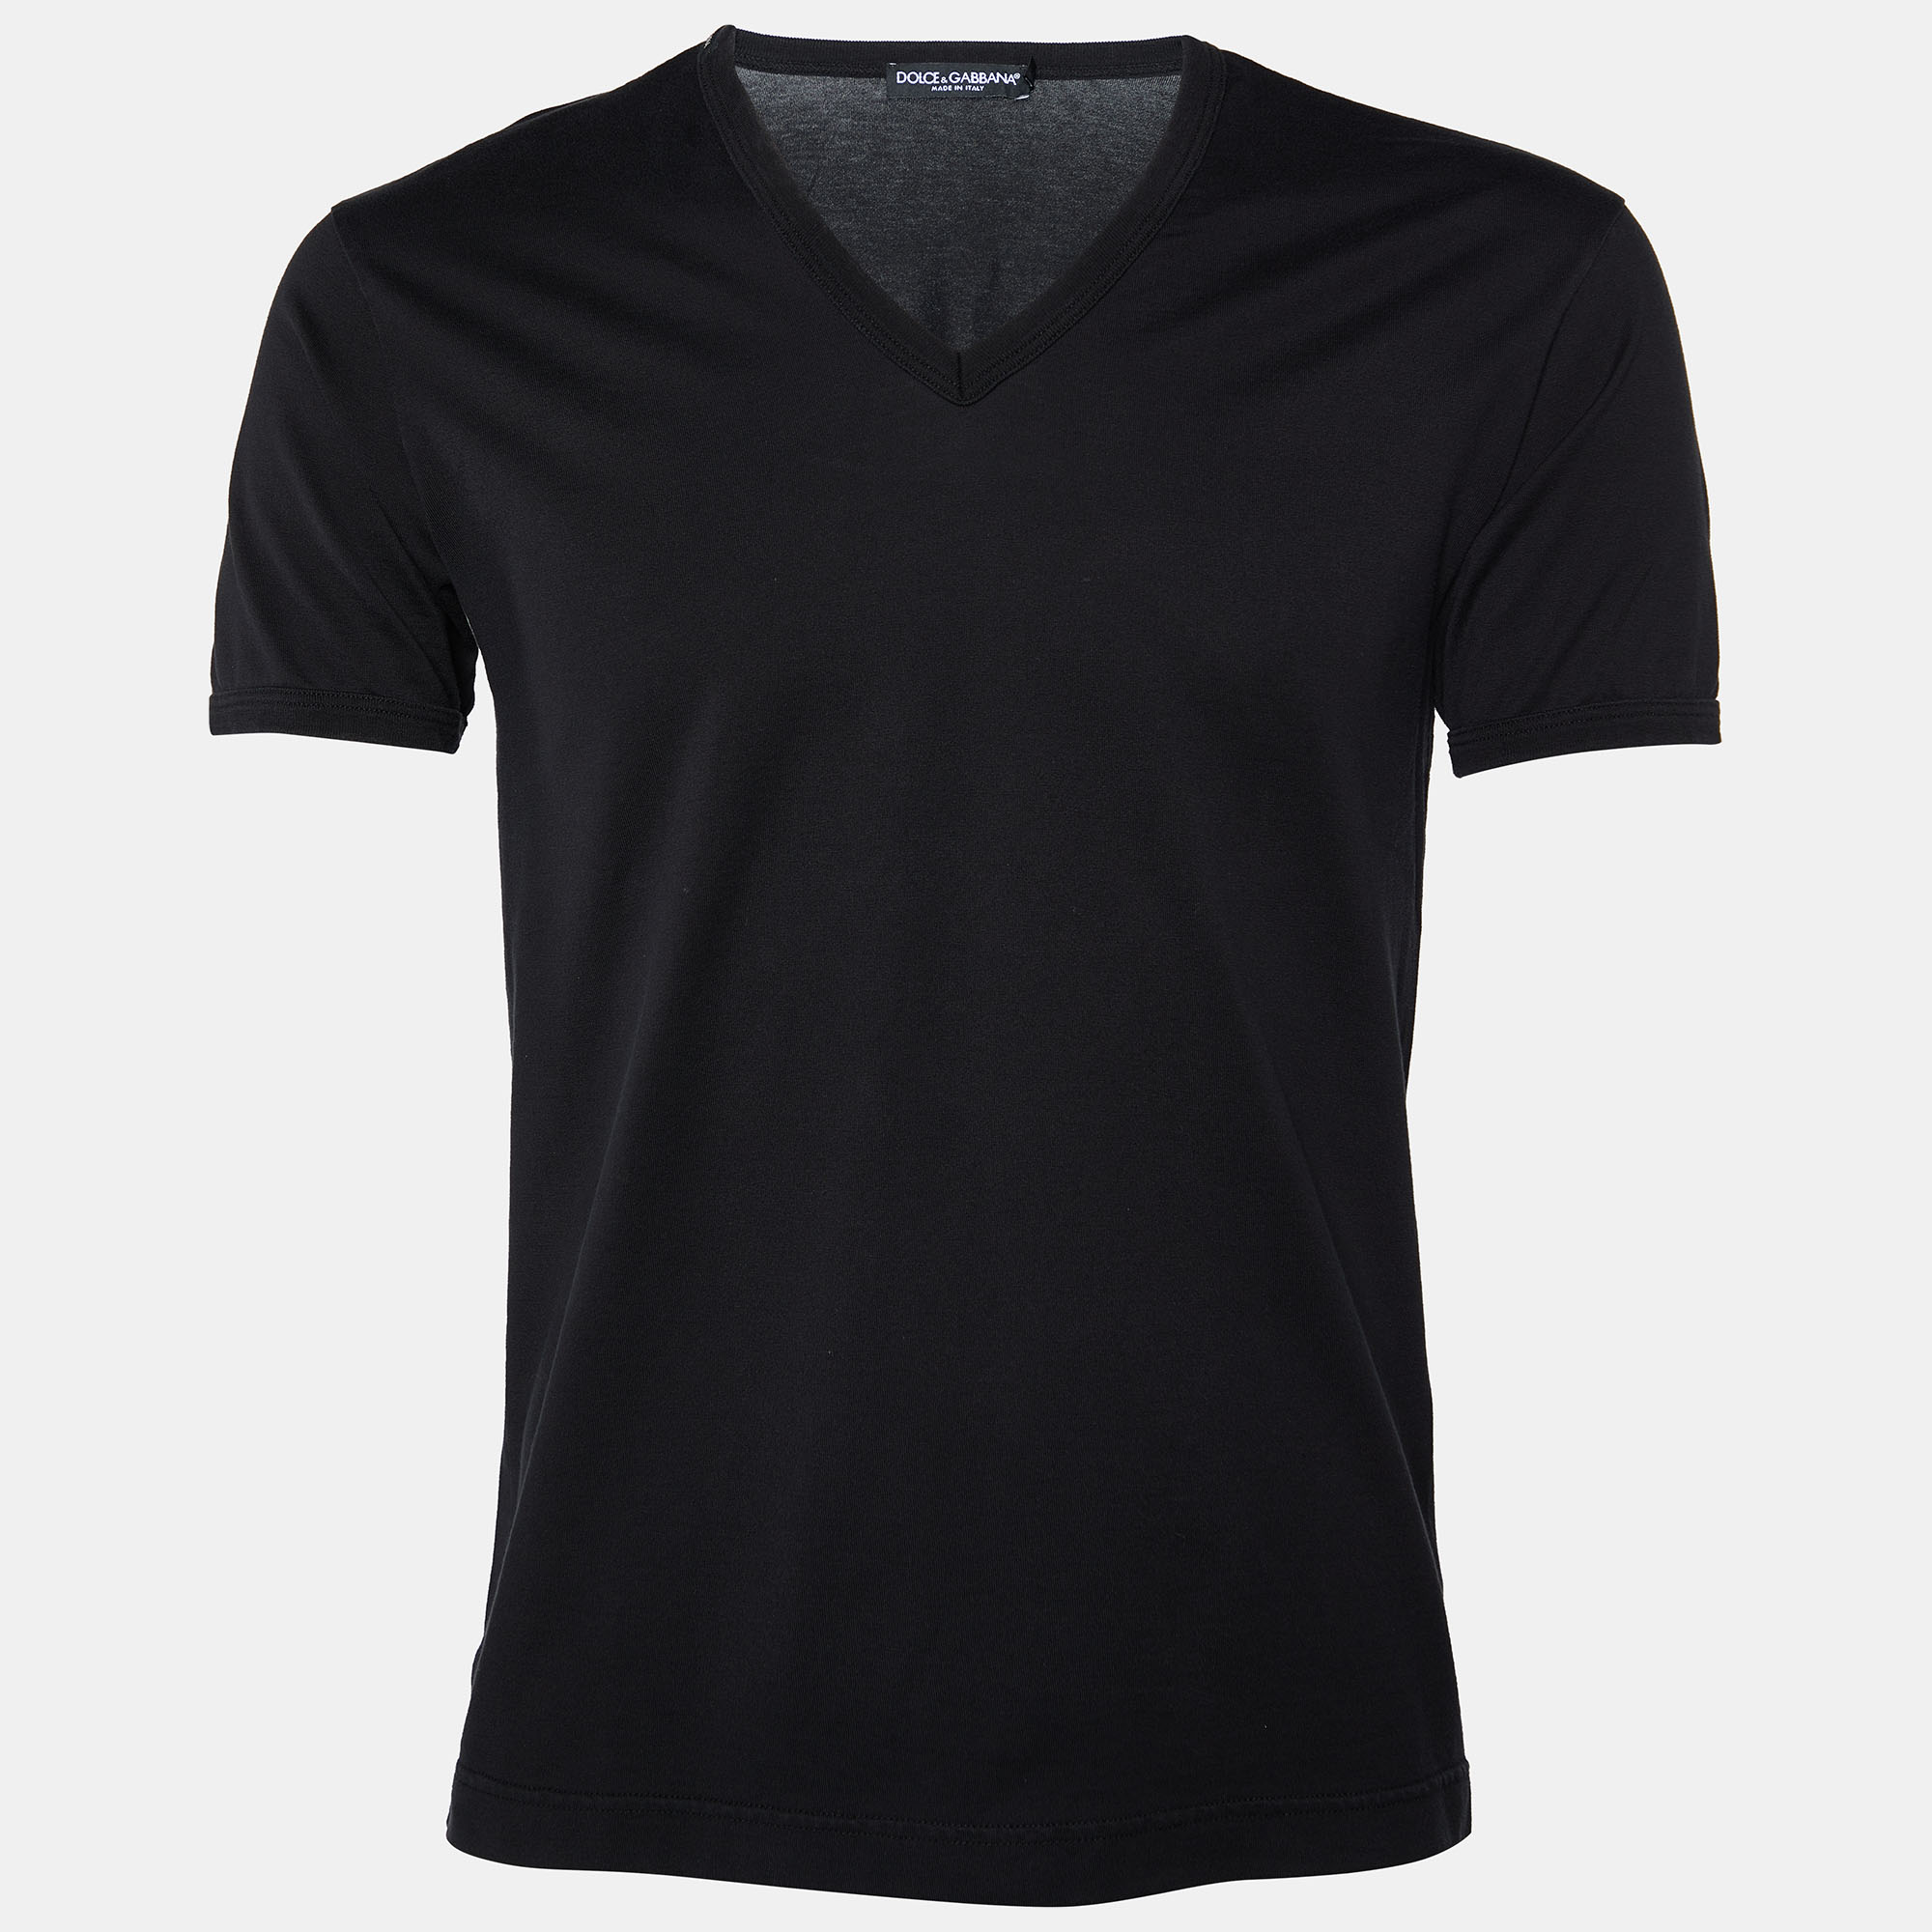 Dolce & Gabbana Black Cotton Knit V-Neck T-Shirt S